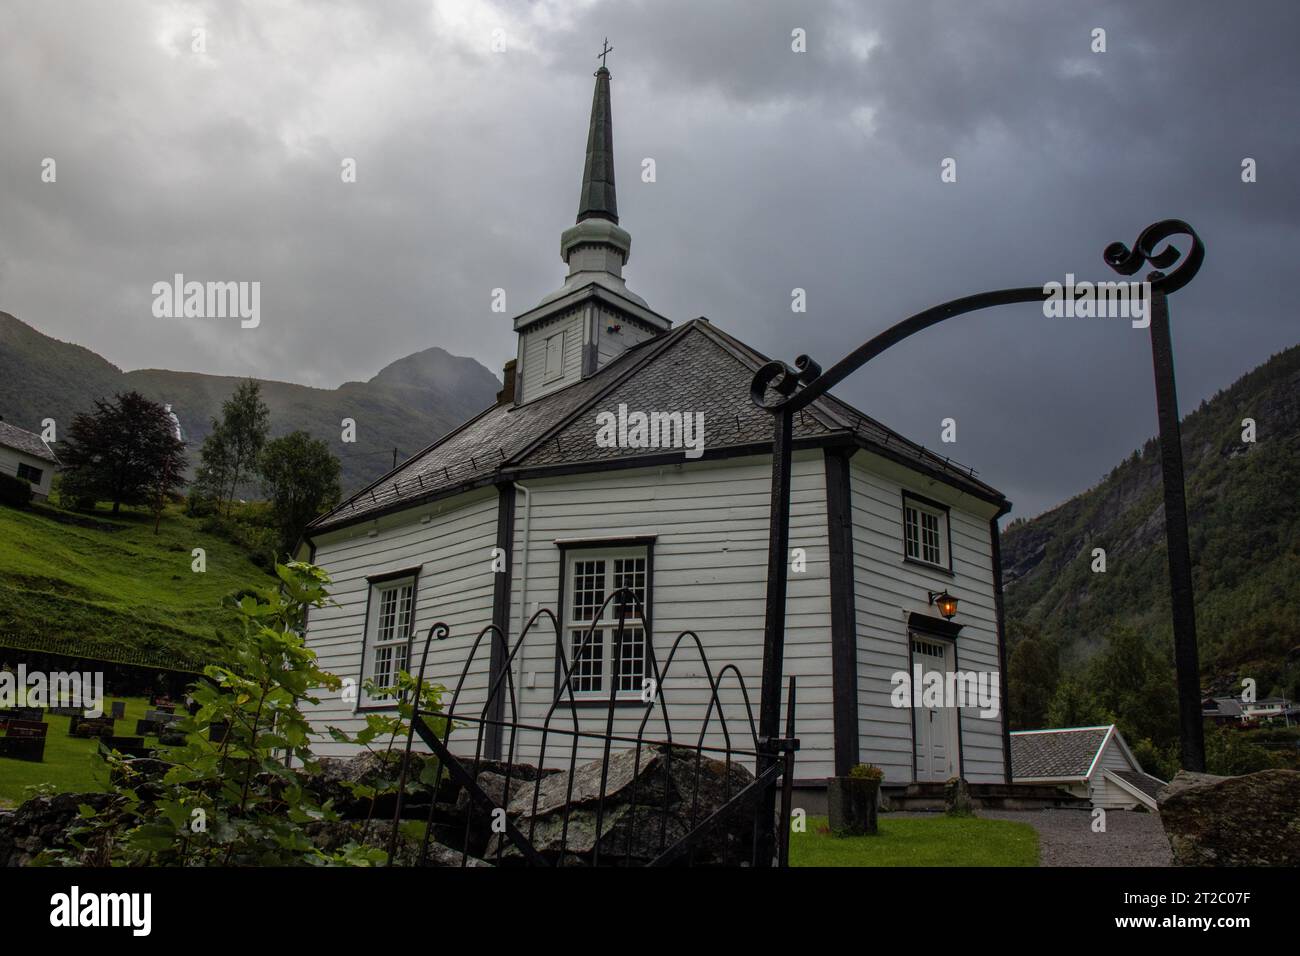 La hermosa iglesia octogonal de Geiranger. Está hecha de madera blanca, tejado de pizarra negra y  unas vistas espectaculares, Noruega Stock Photo